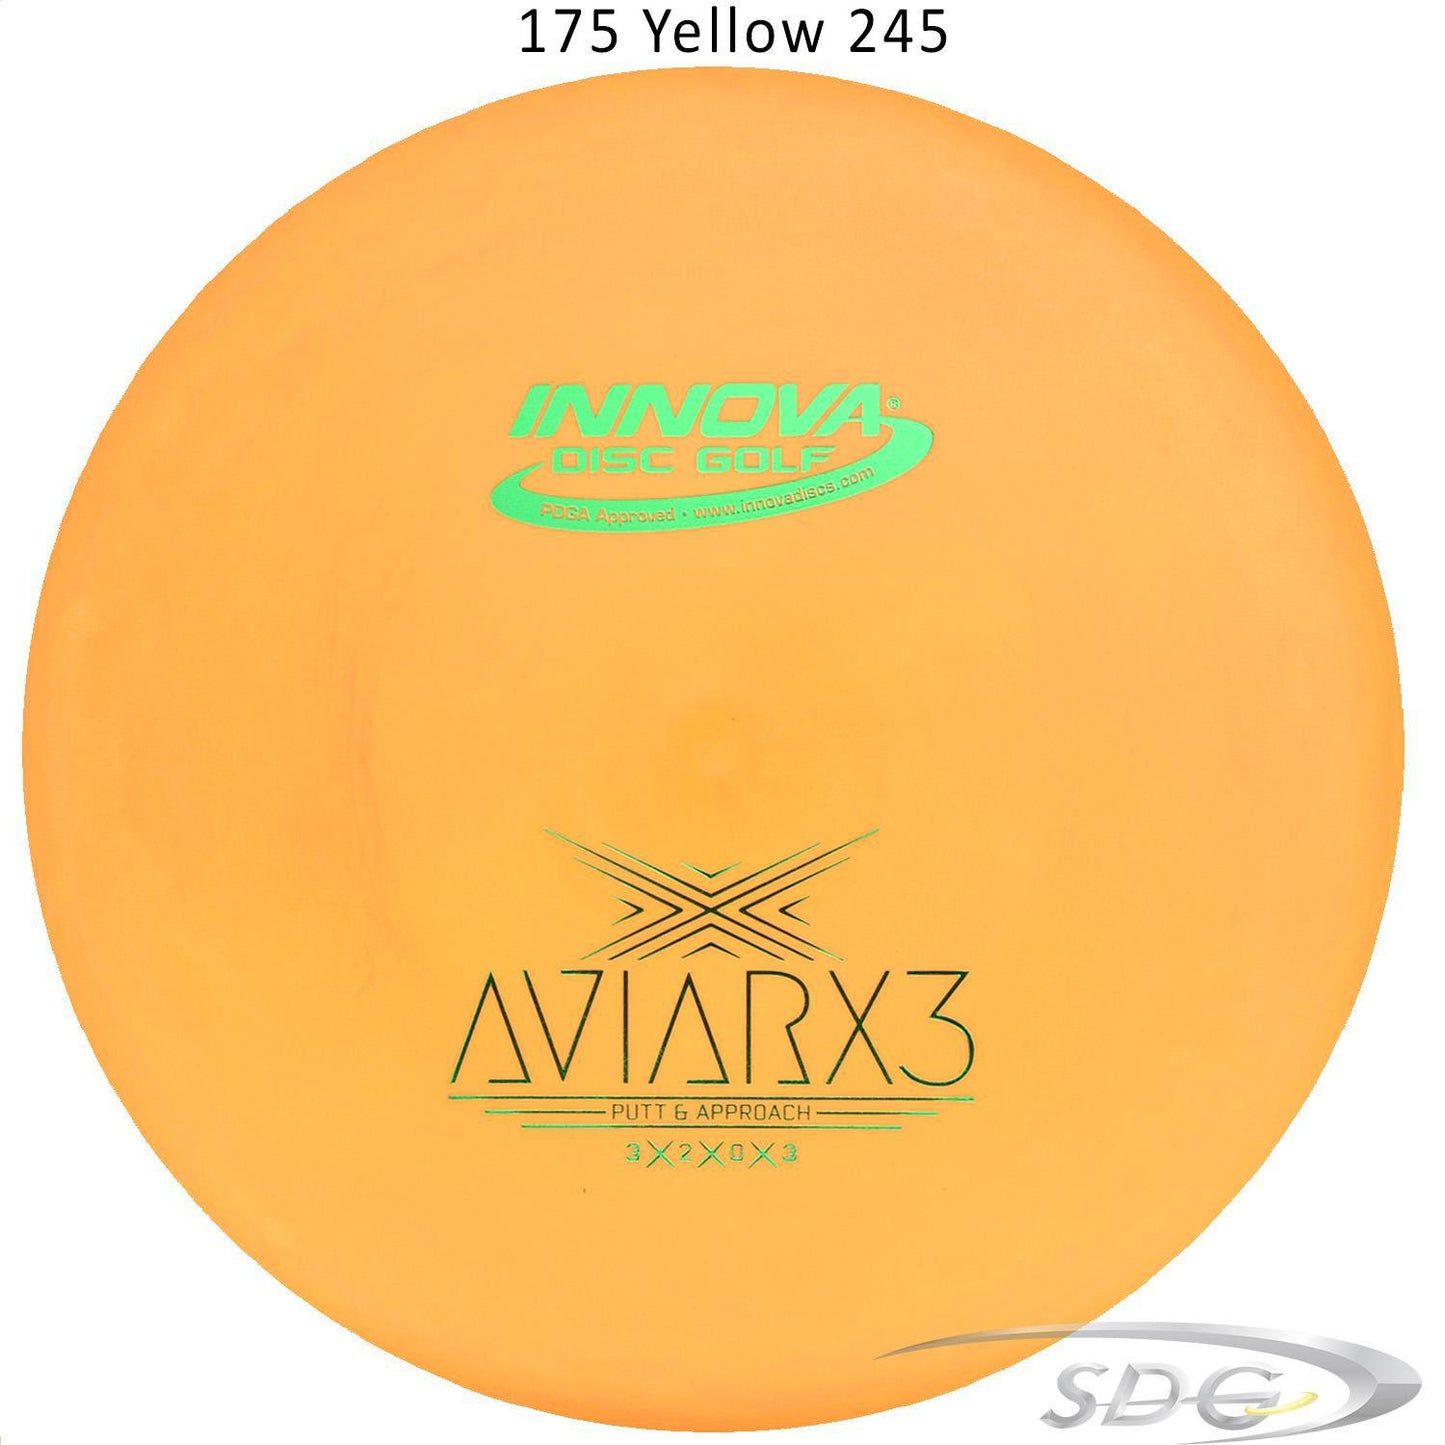 innova-dx-aviarx3-disc-golf-putter 175 Yellow 245 